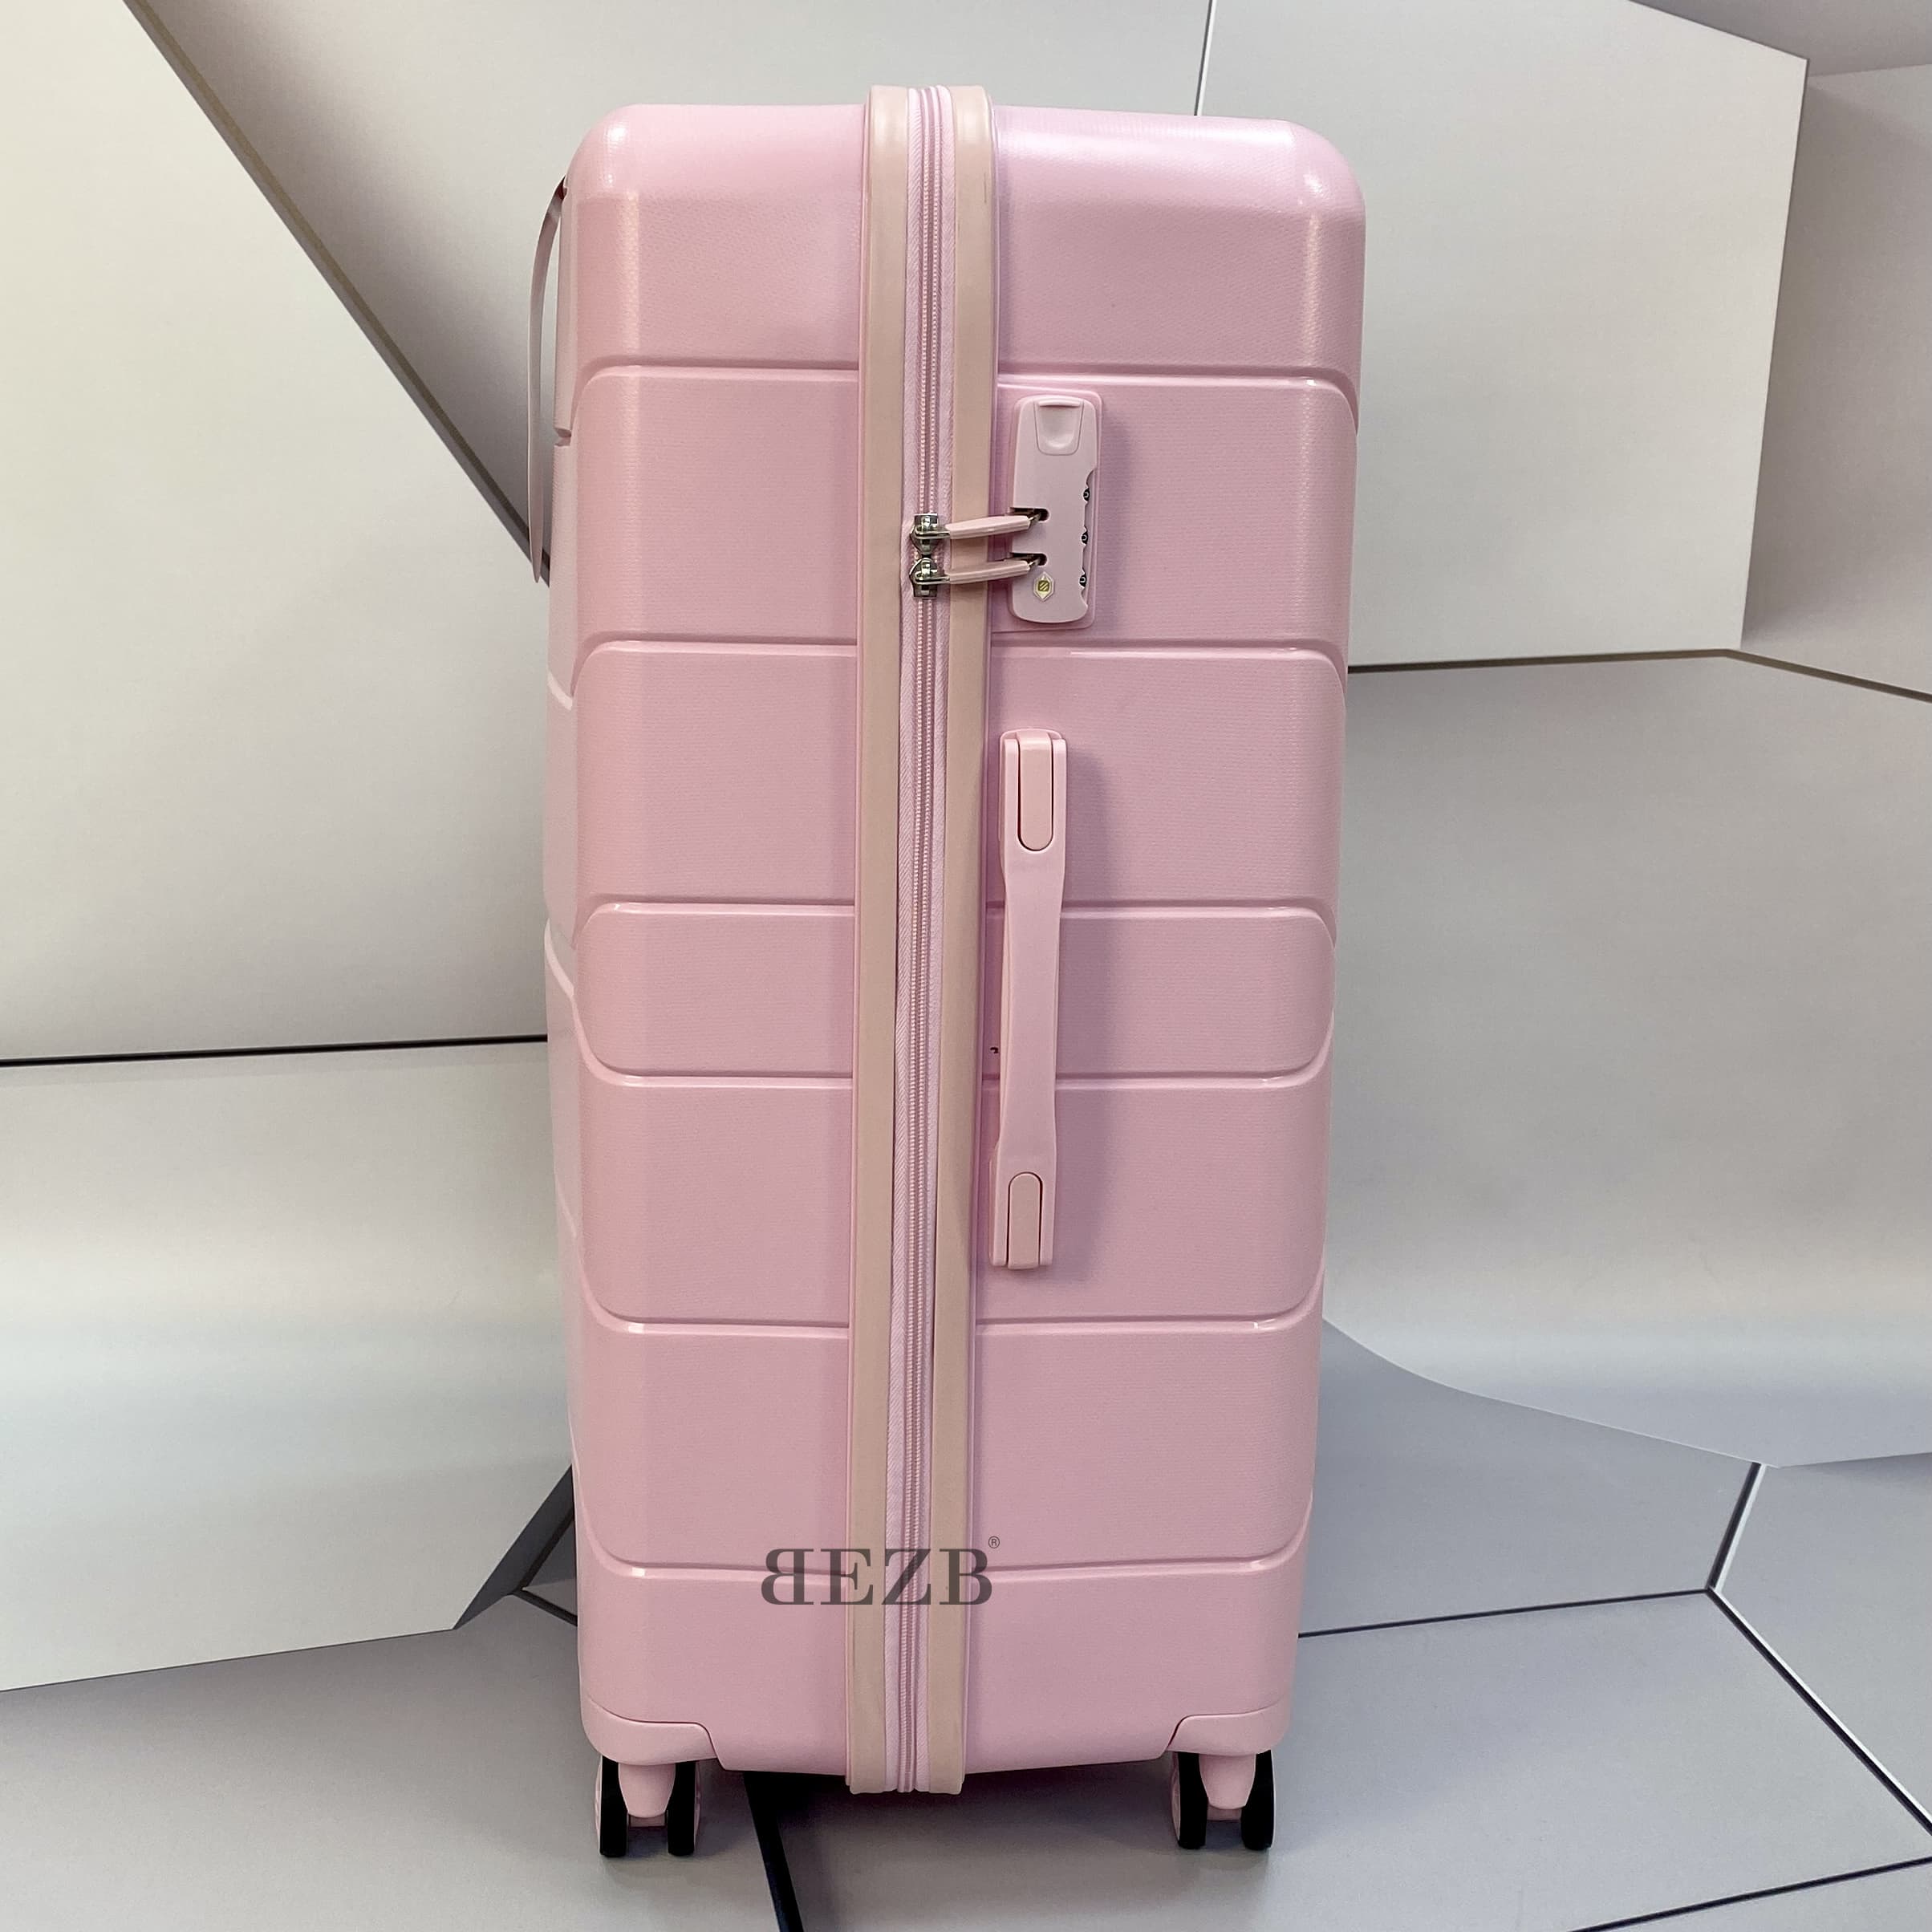 Маленький чемодан для ручьной клади из полипропилена MCS V366 S POWDER! Для 8-10 кг! - 3